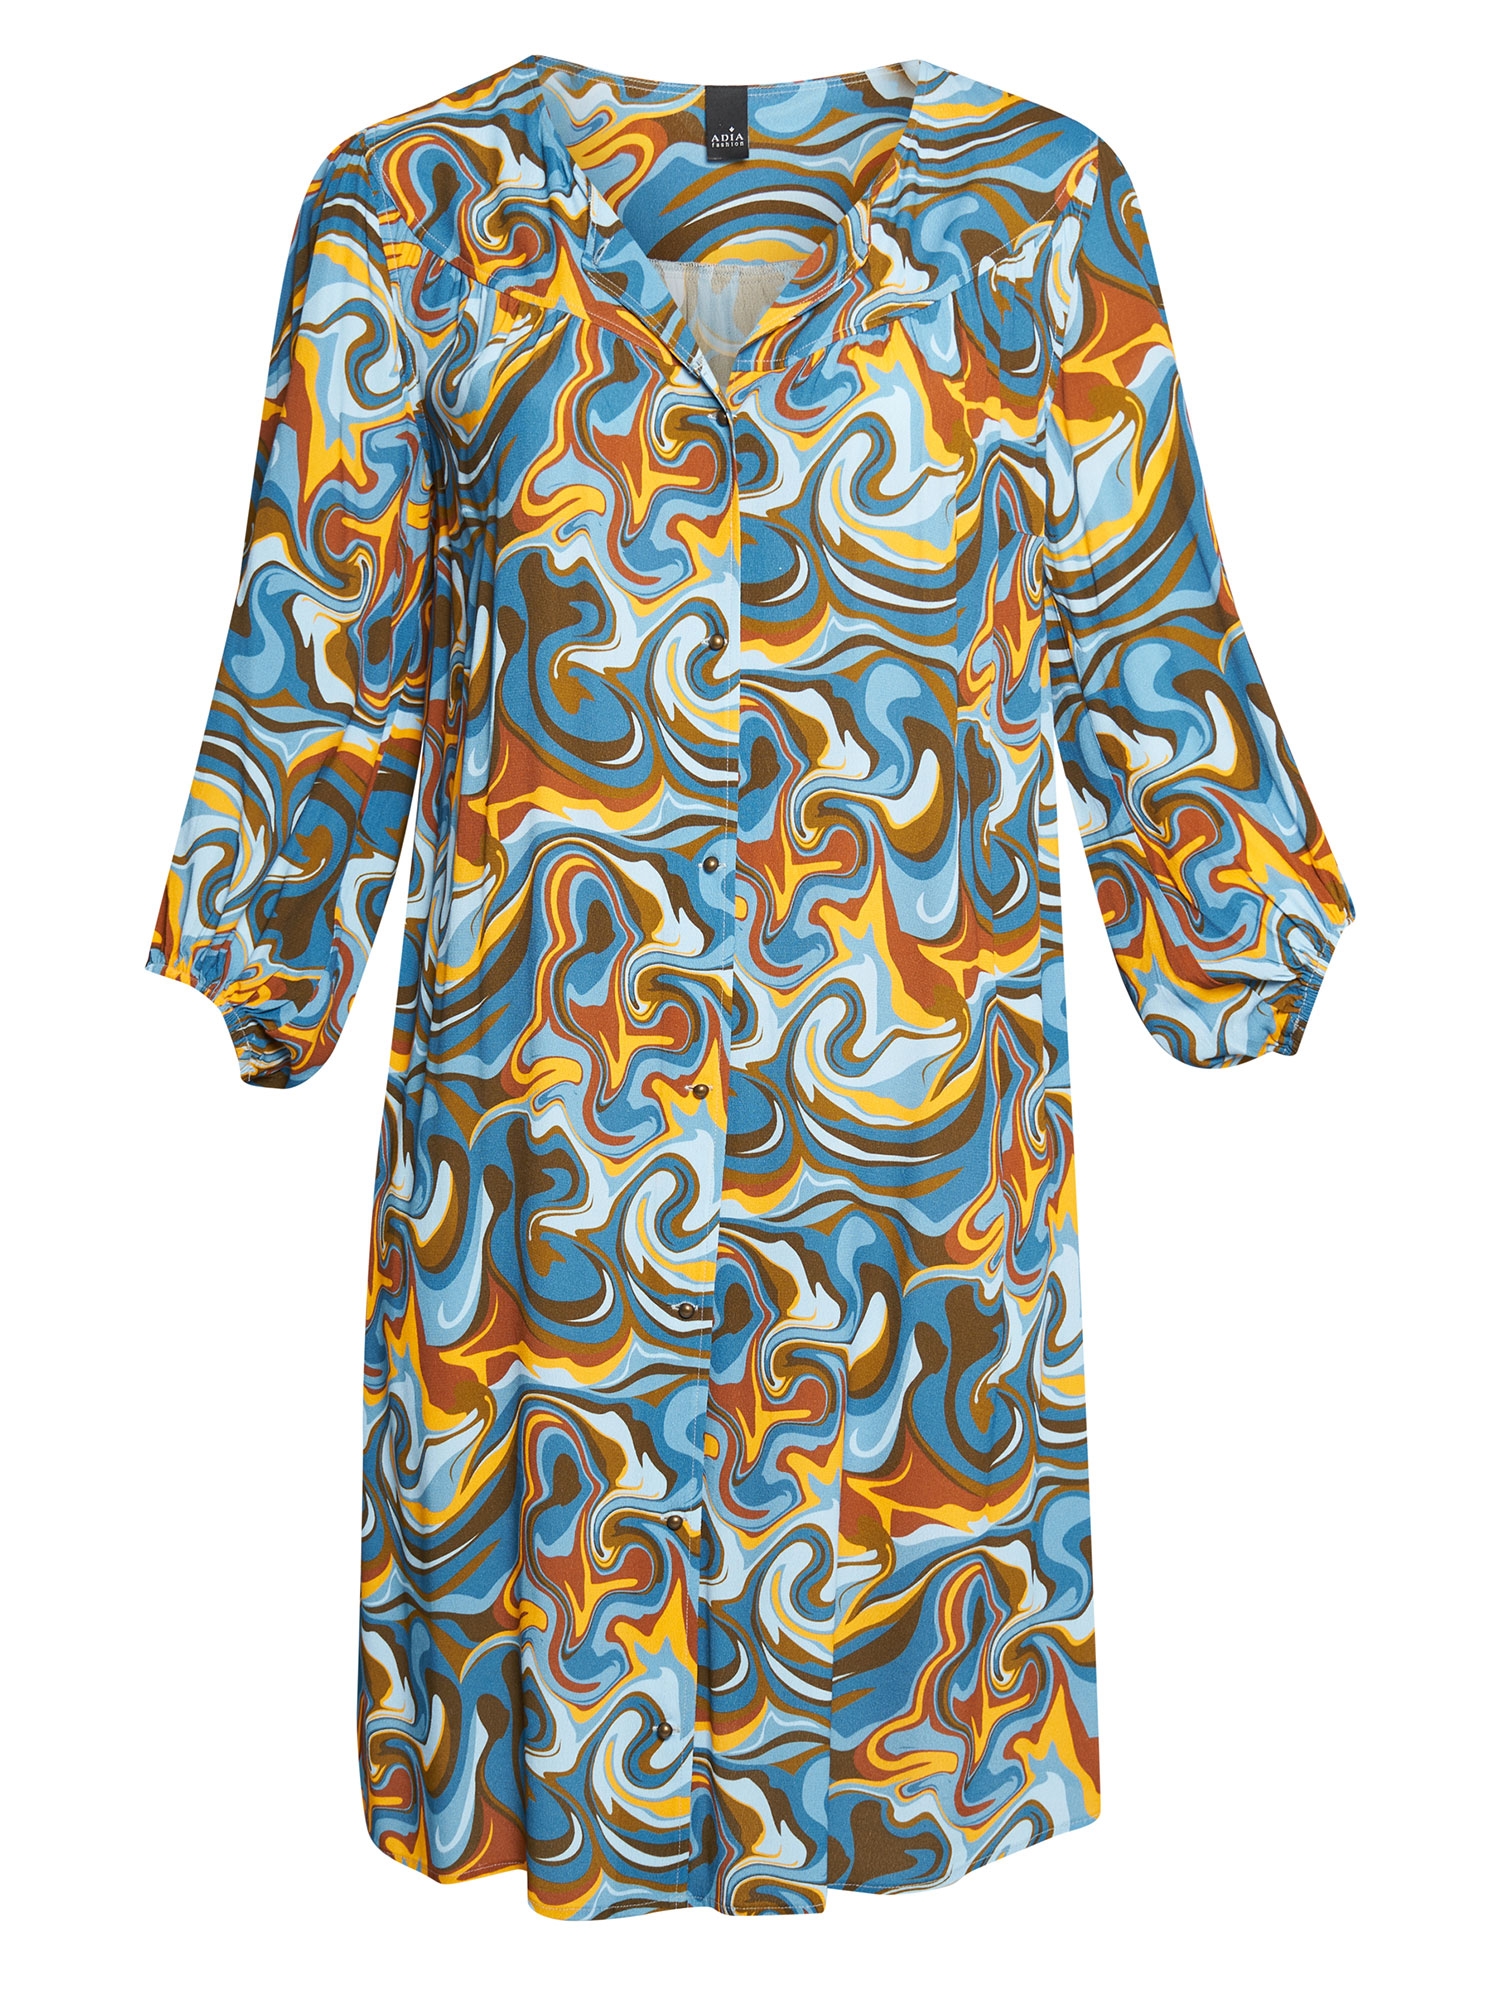 MARTA - skjortekjole med retro print i blå og gyldne toner  fra Adia